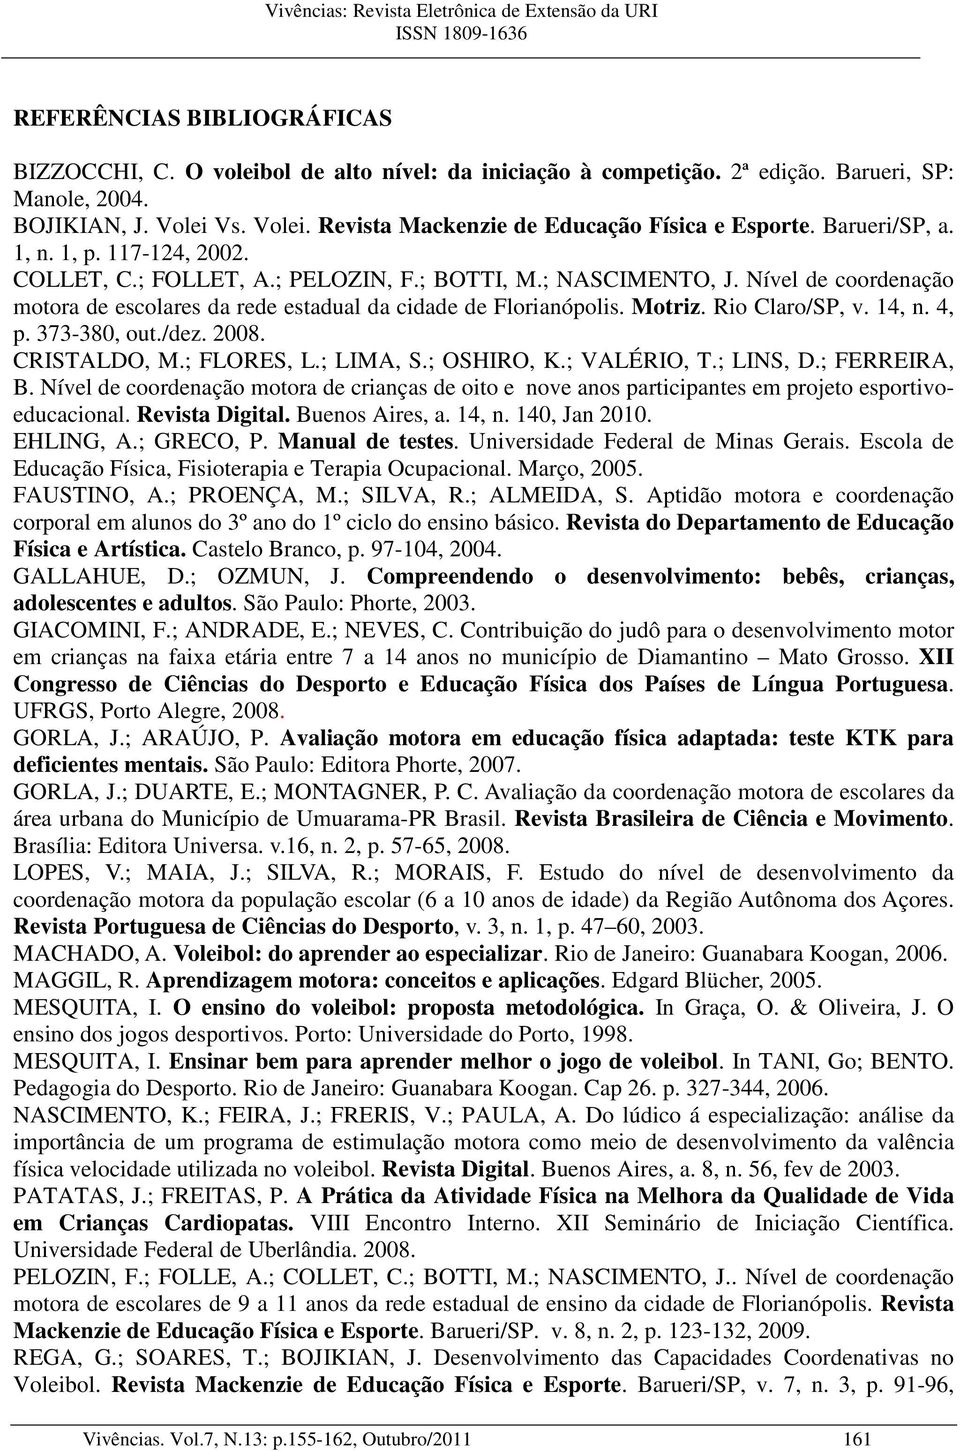 Rio Claro/SP, v. 14, n. 4, p. 373-380, out./dez. 2008. CRISTALDO, M.; FLORES, L.; LIMA, S.; OSHIRO, K.; VALÉRIO, T.; LINS, D.; FERREIRA, B.